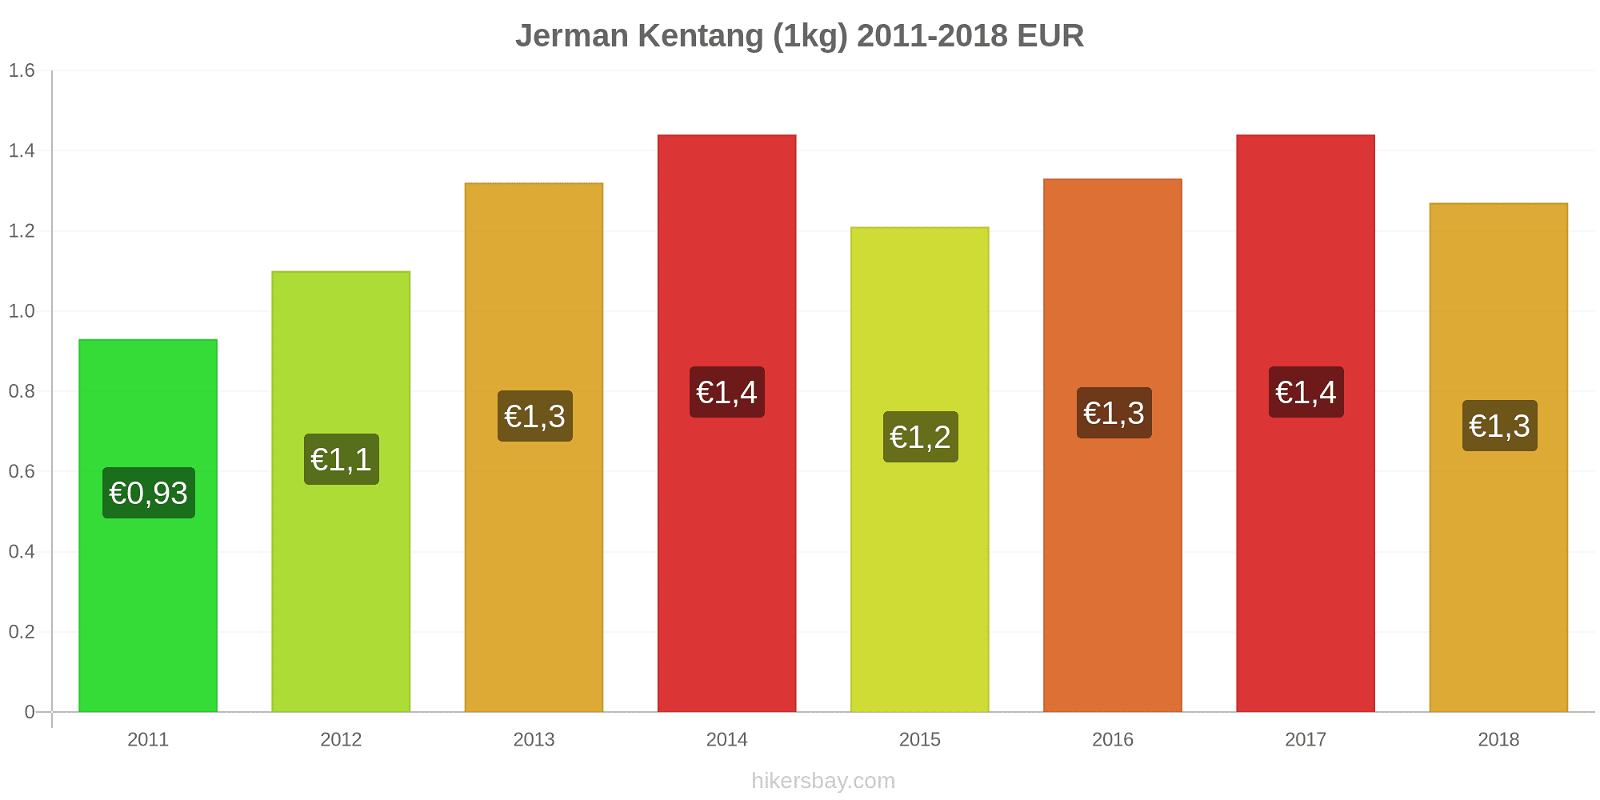 Jerman perubahan harga Kentang (1kg) hikersbay.com